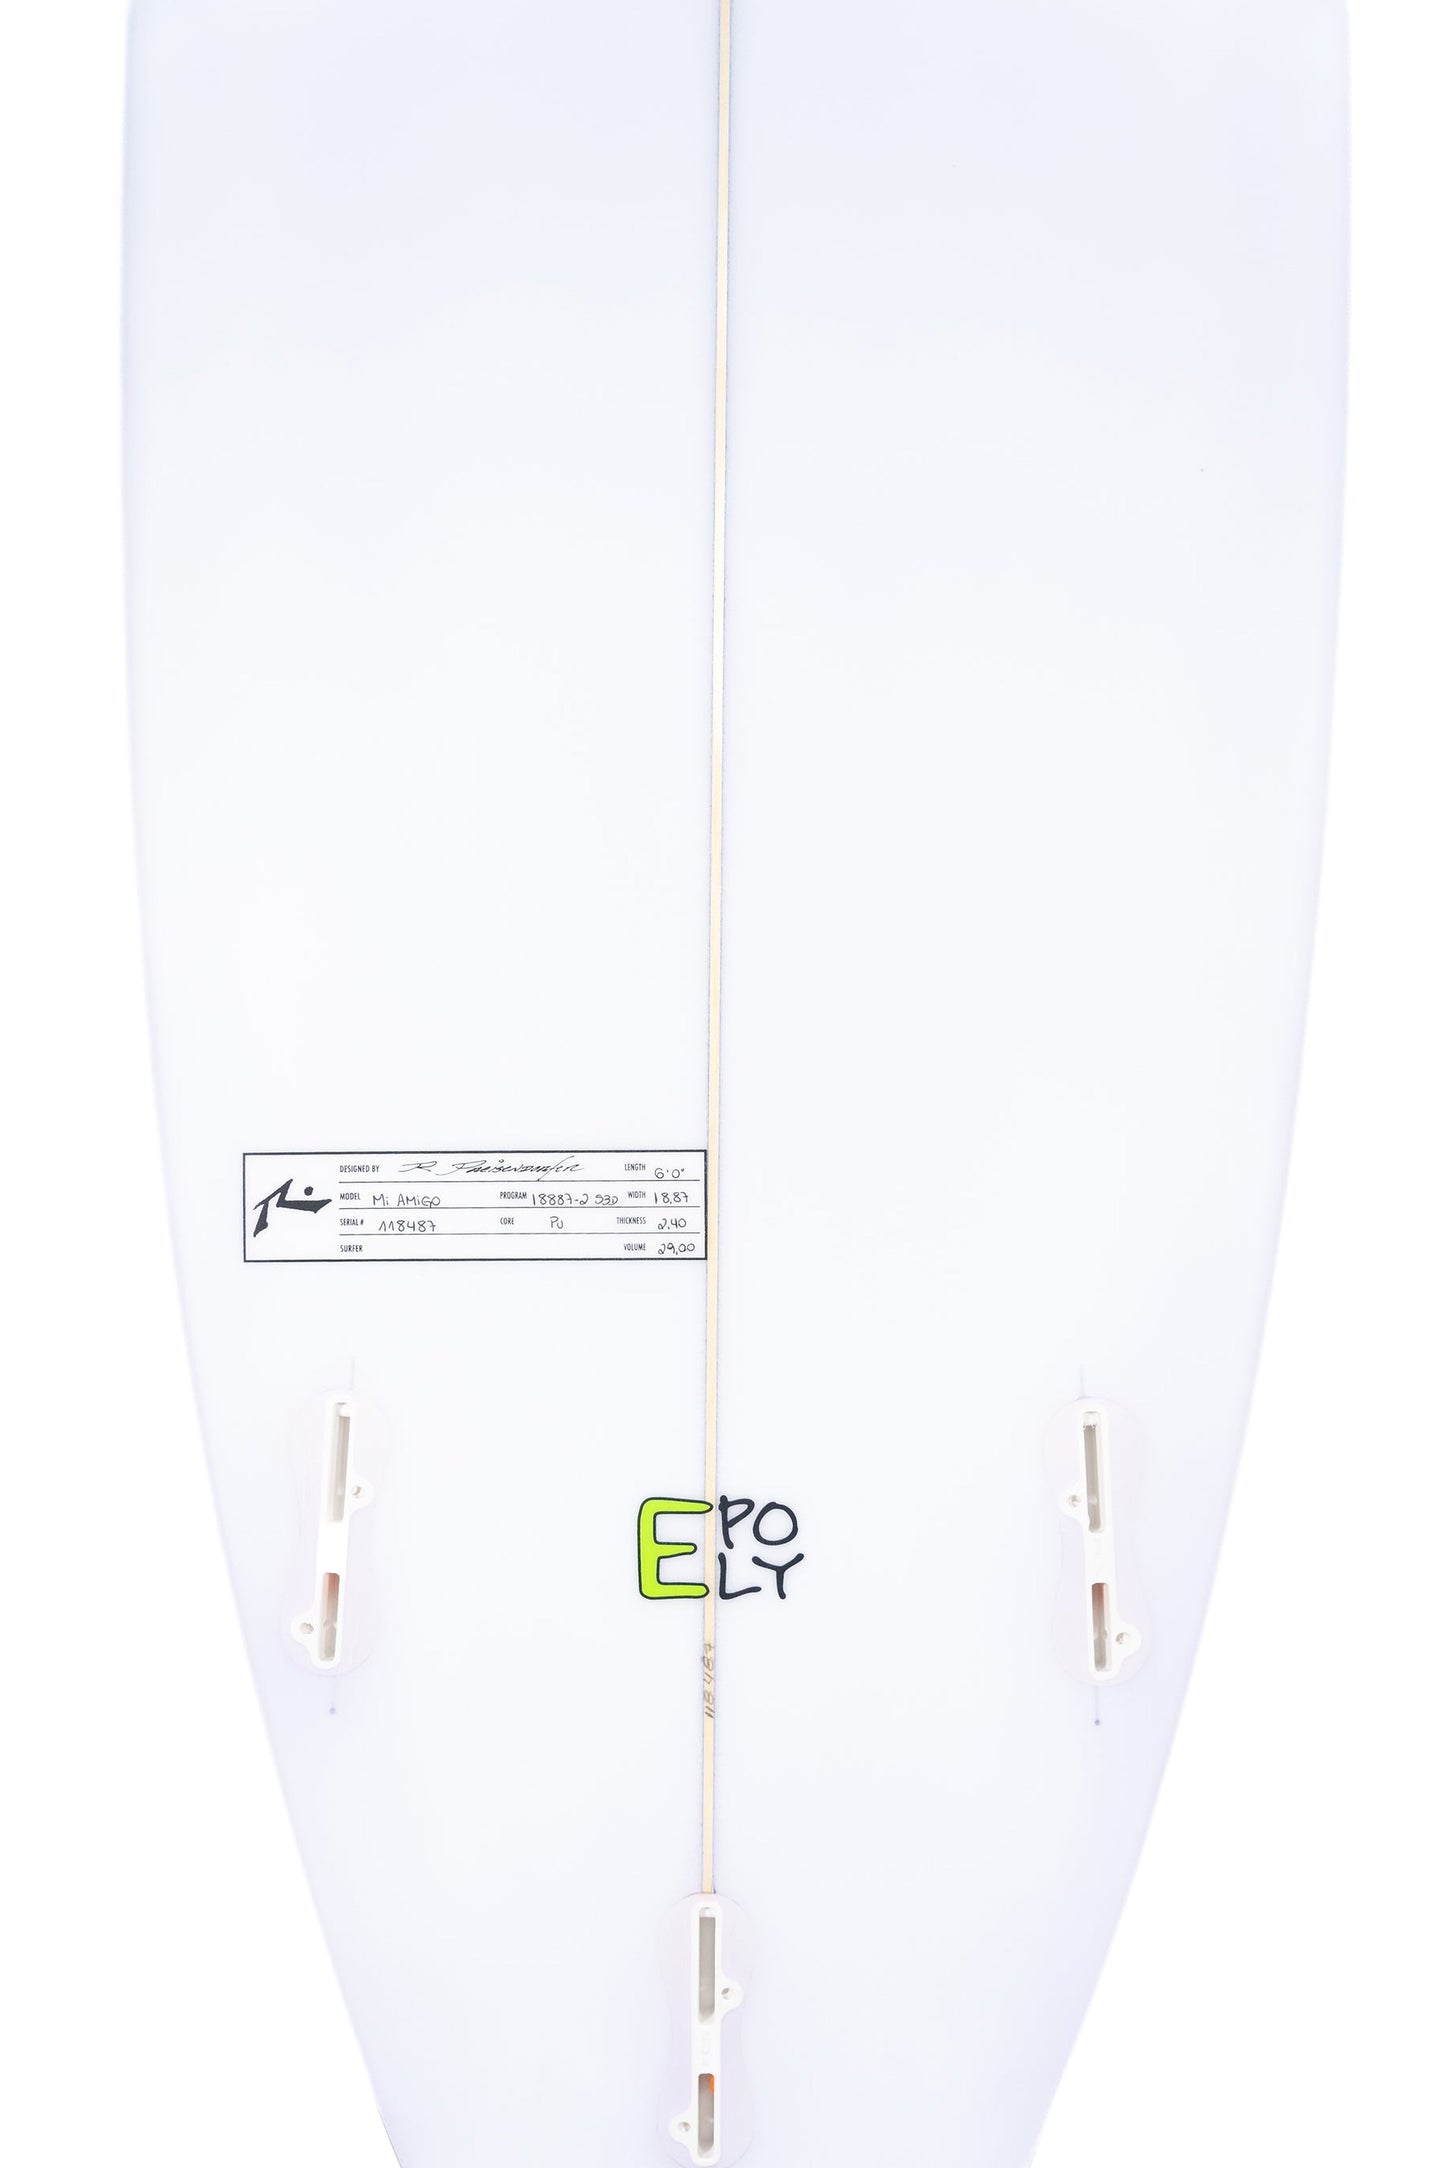 Surfboard Rusty Mi Amigo 6' 0"